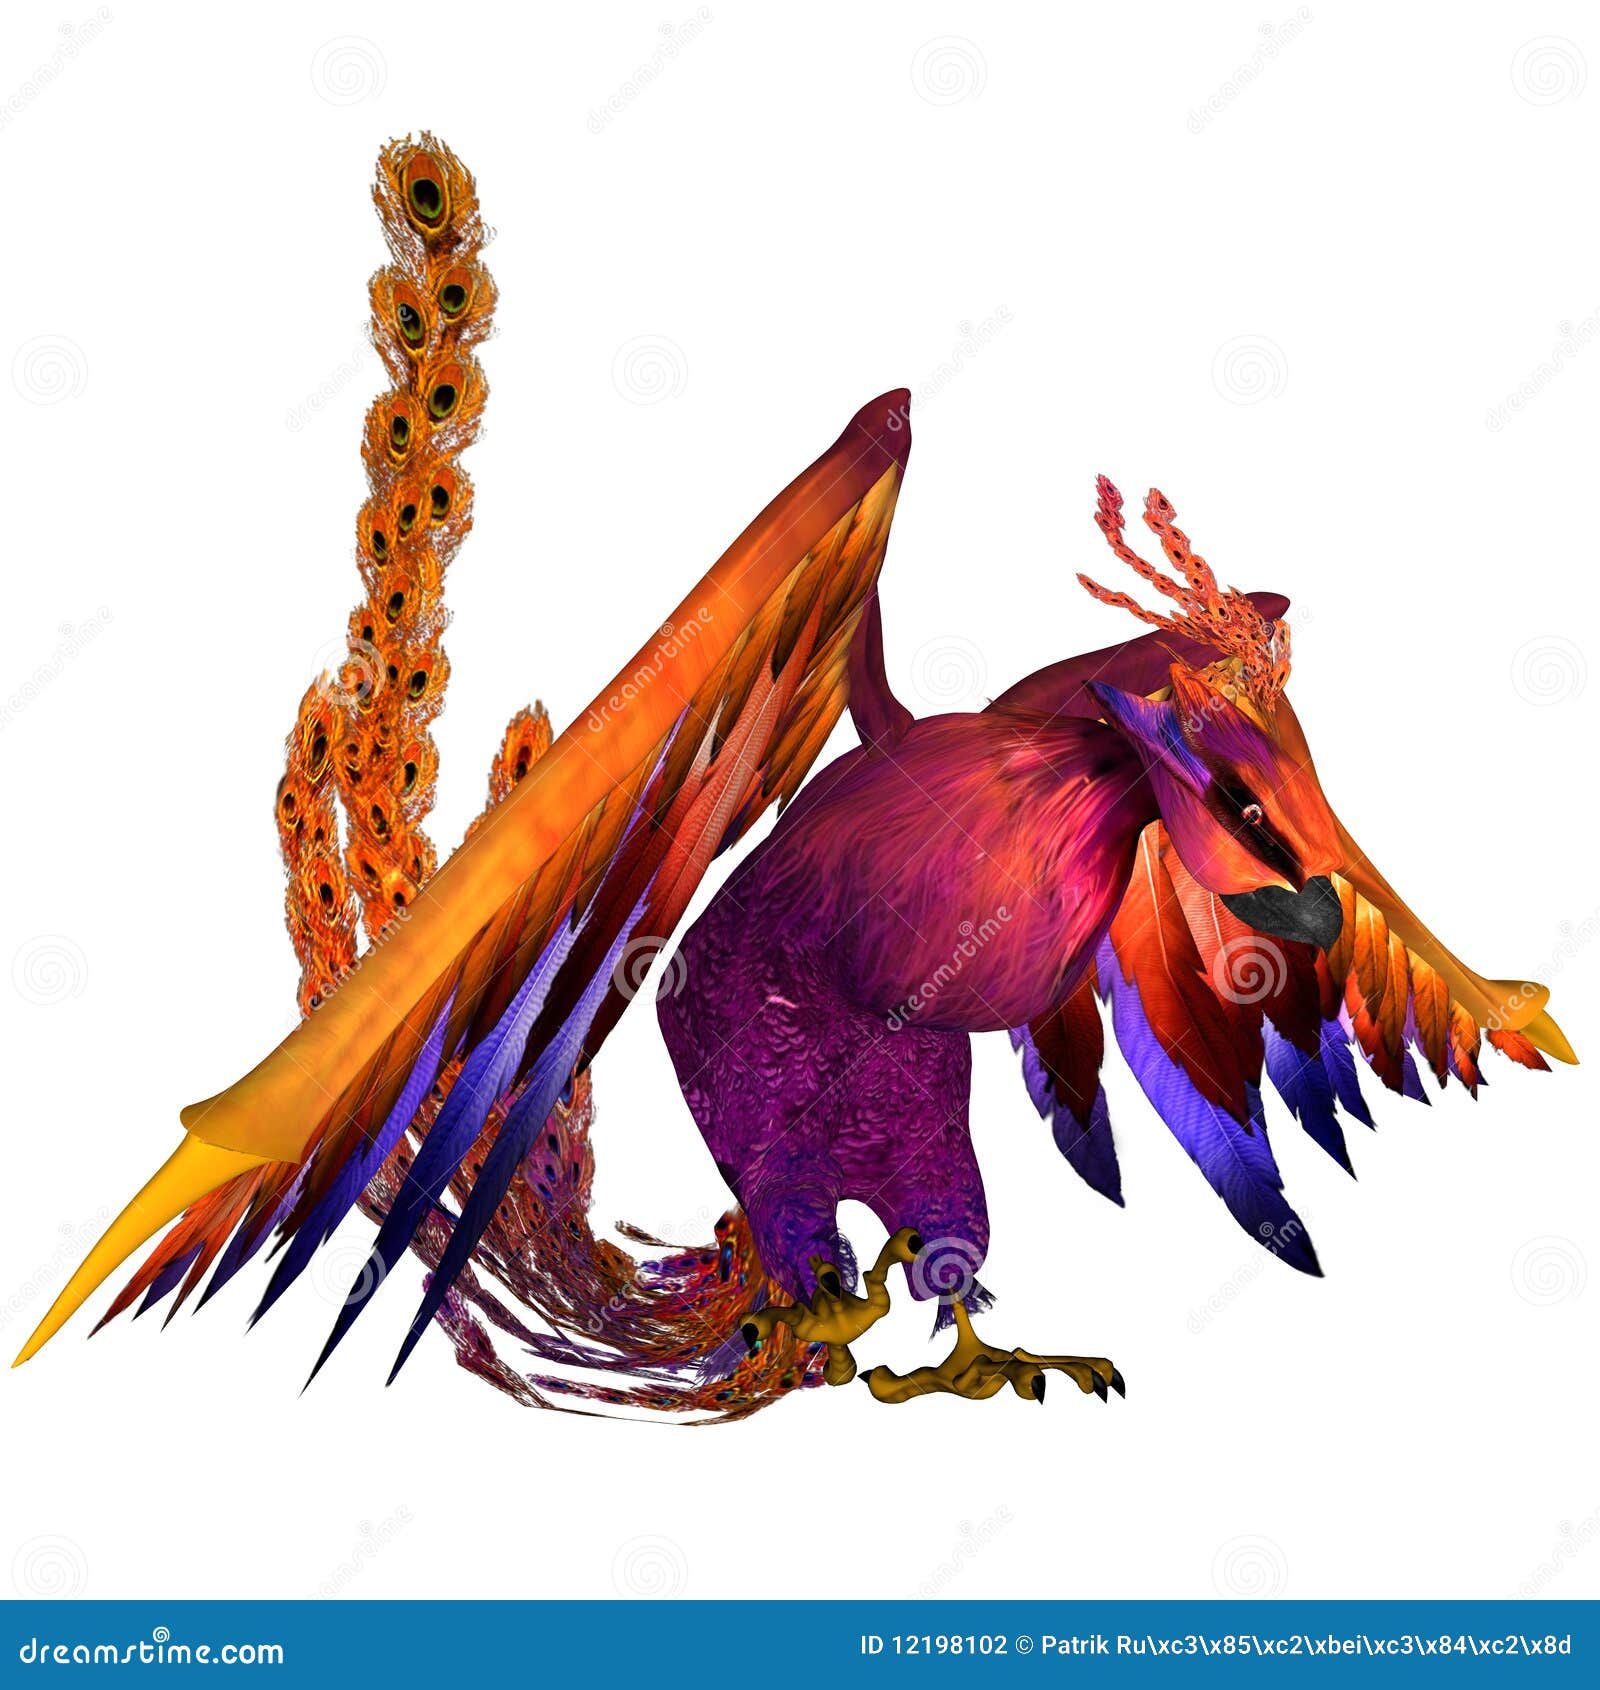 Phoenix stock illustration. Illustration of bird, phoenix - 12198102